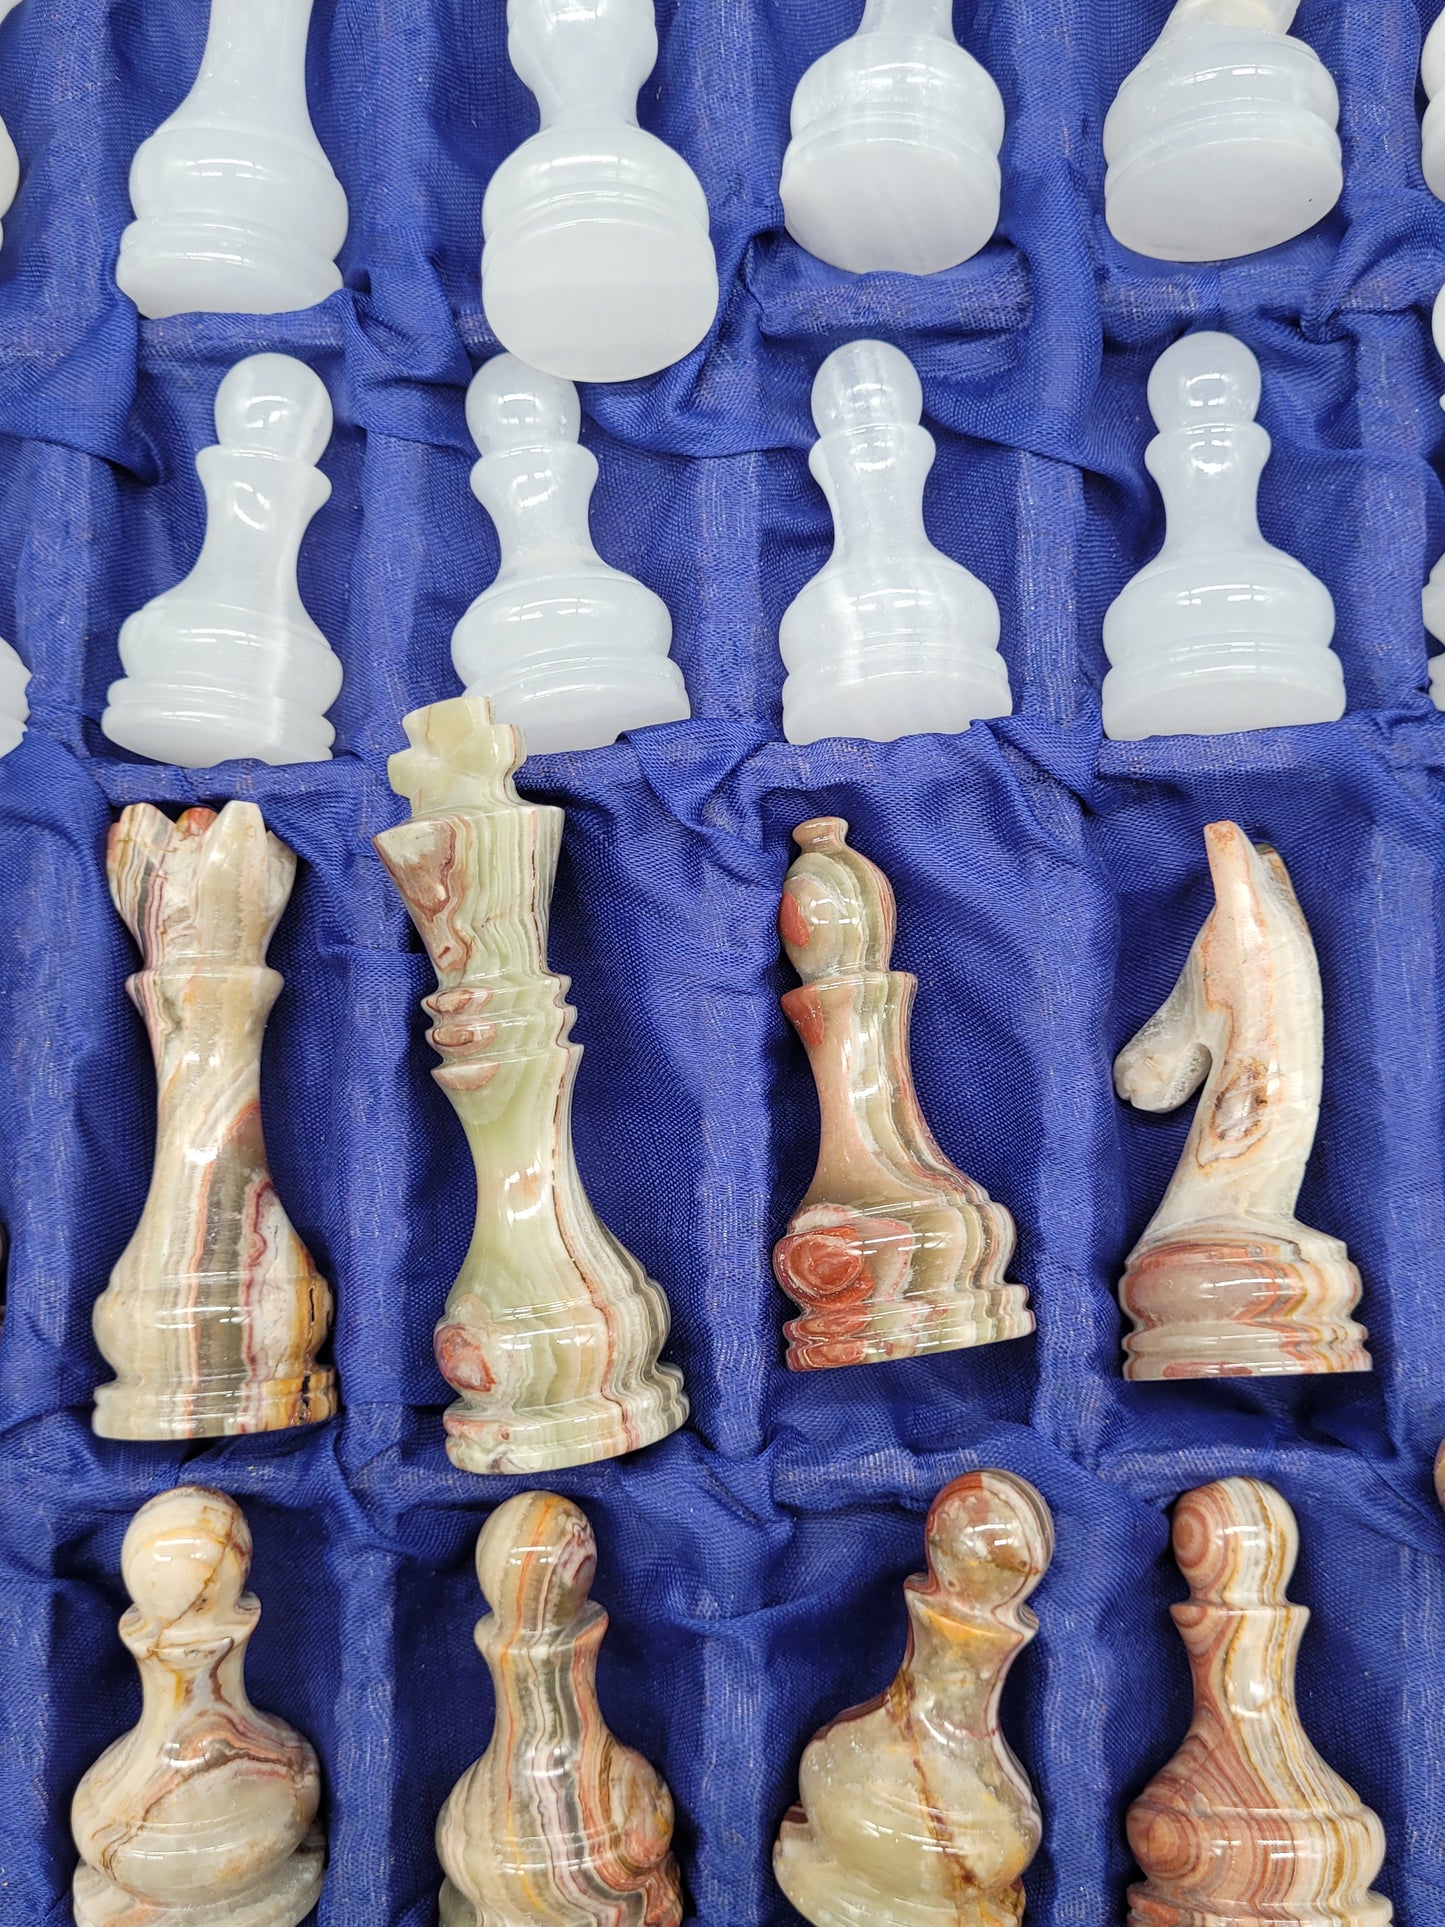 Designer Marmor Schachspiel 32 schachfiguren mit Schachbrett